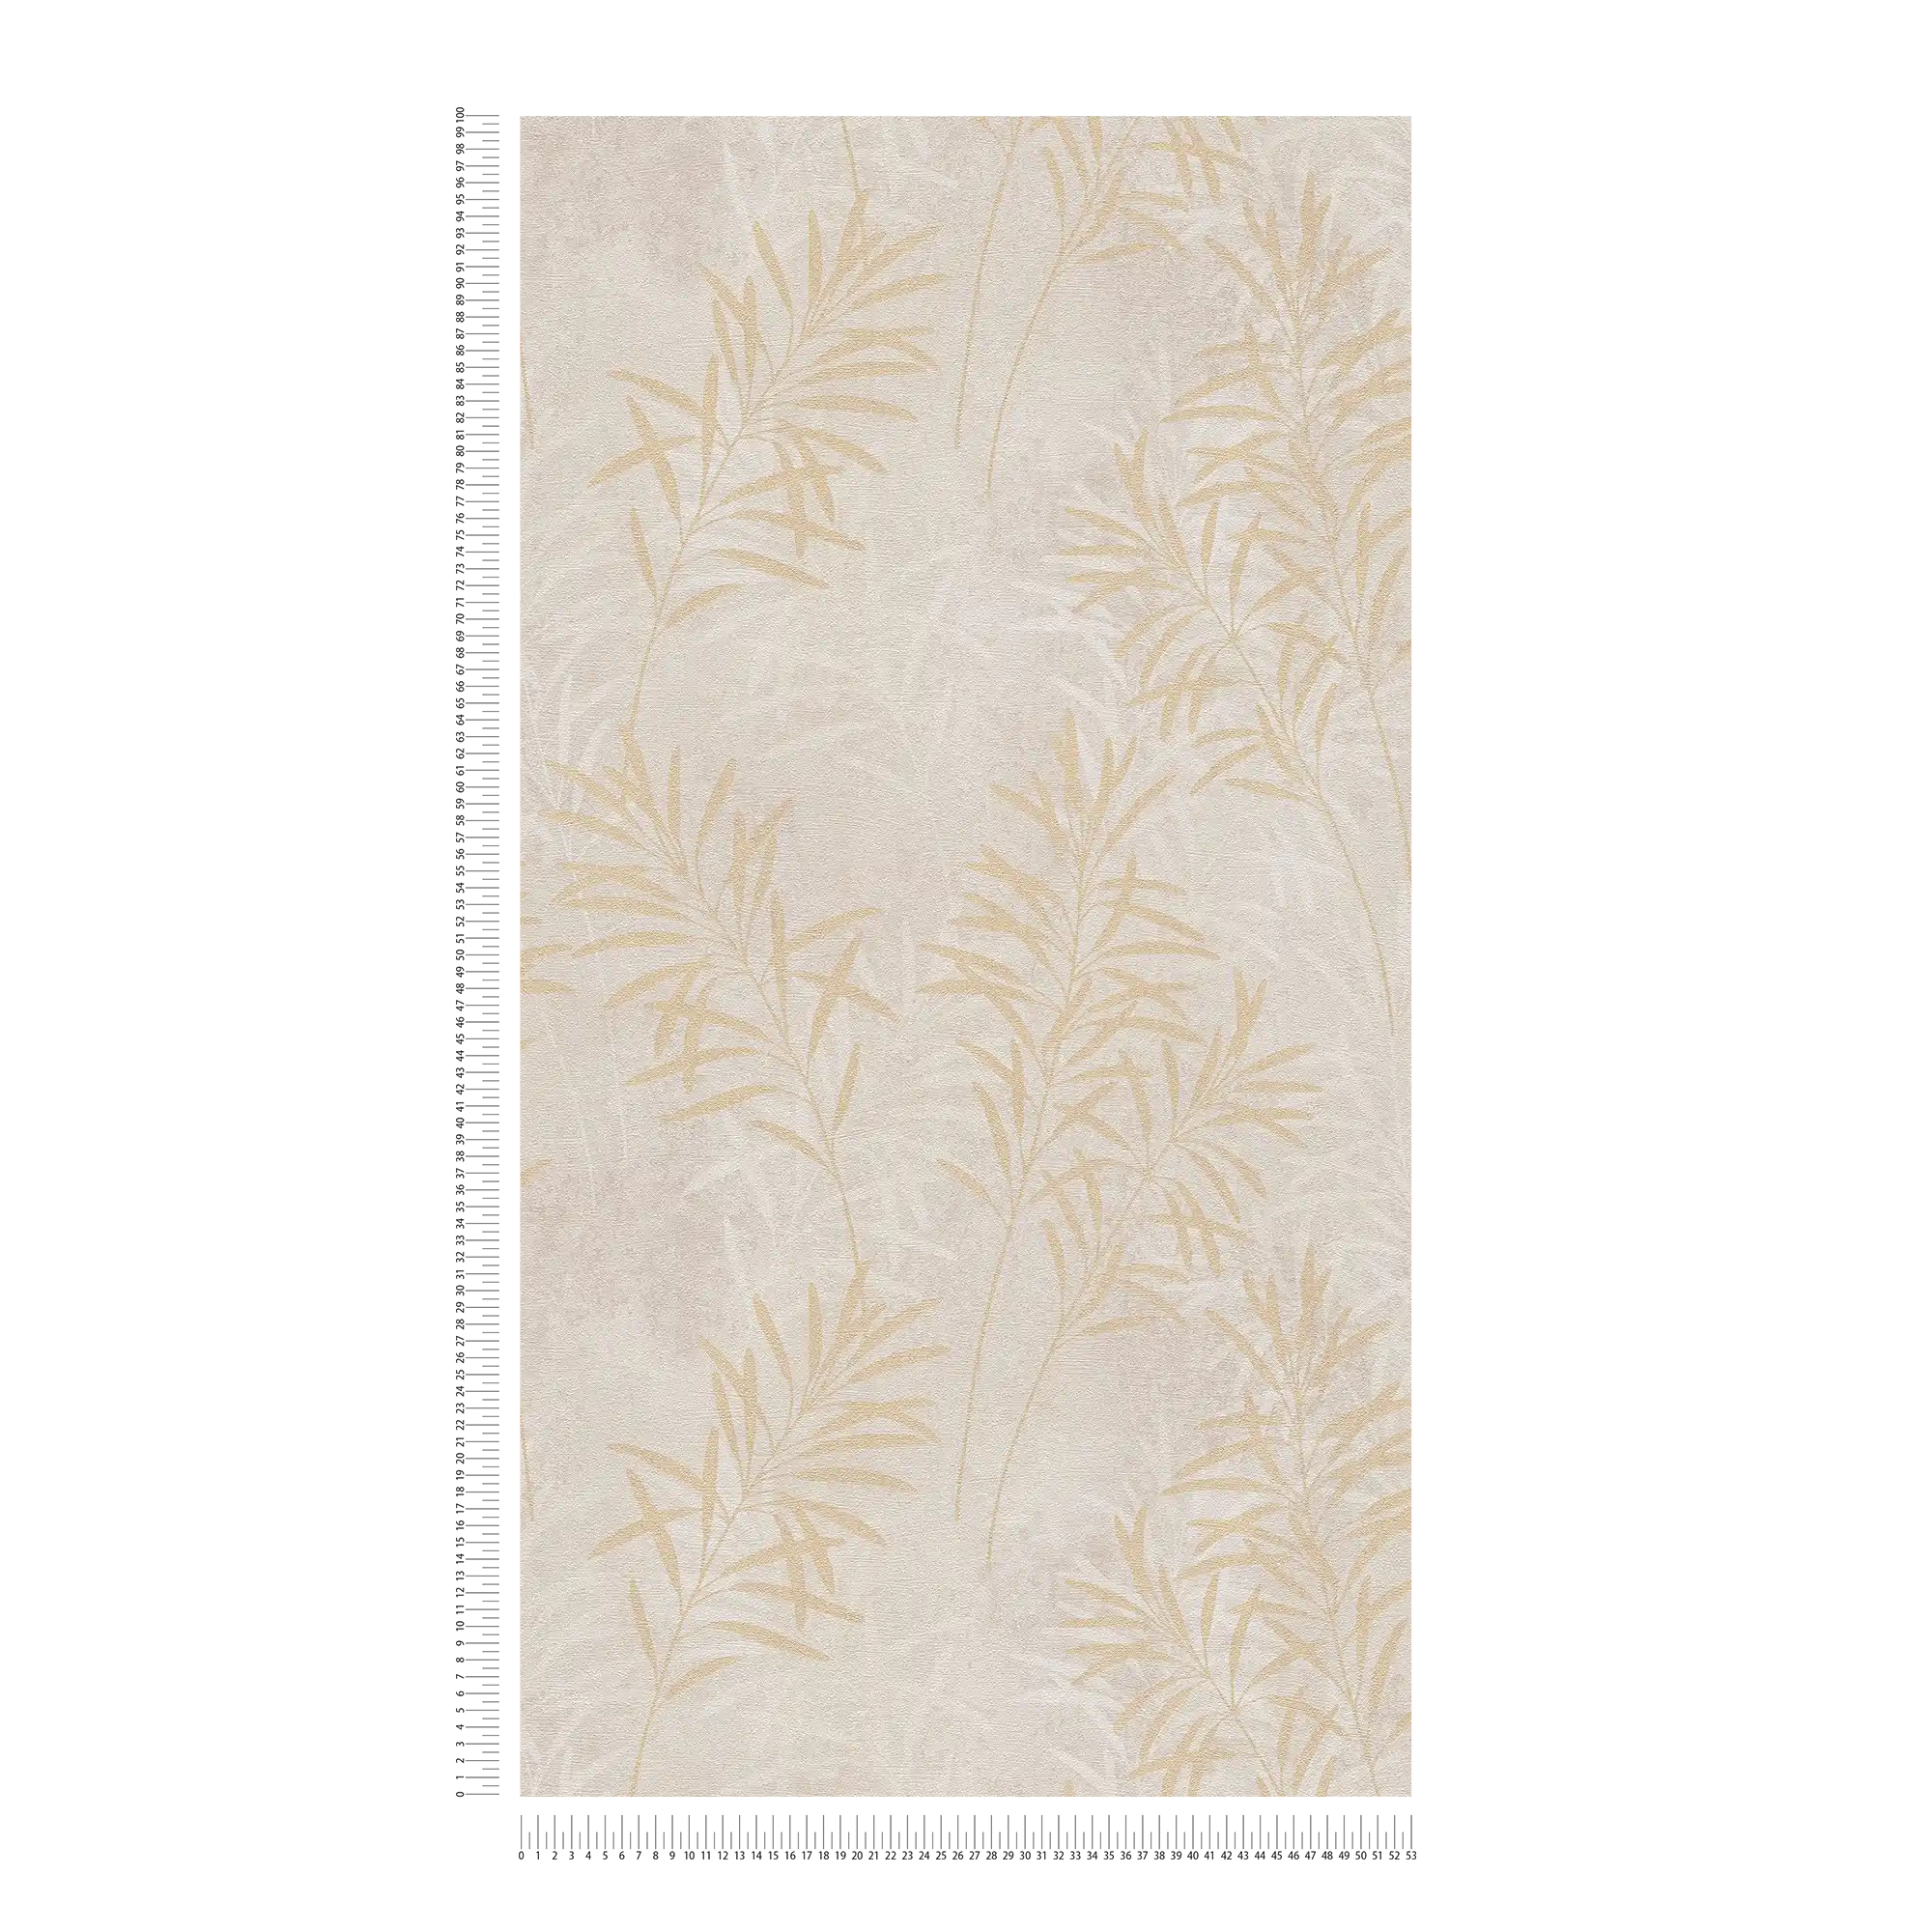             Carta da parati in tessuto non tessuto con motivo floreale a palma - crema, grigio, oro
        